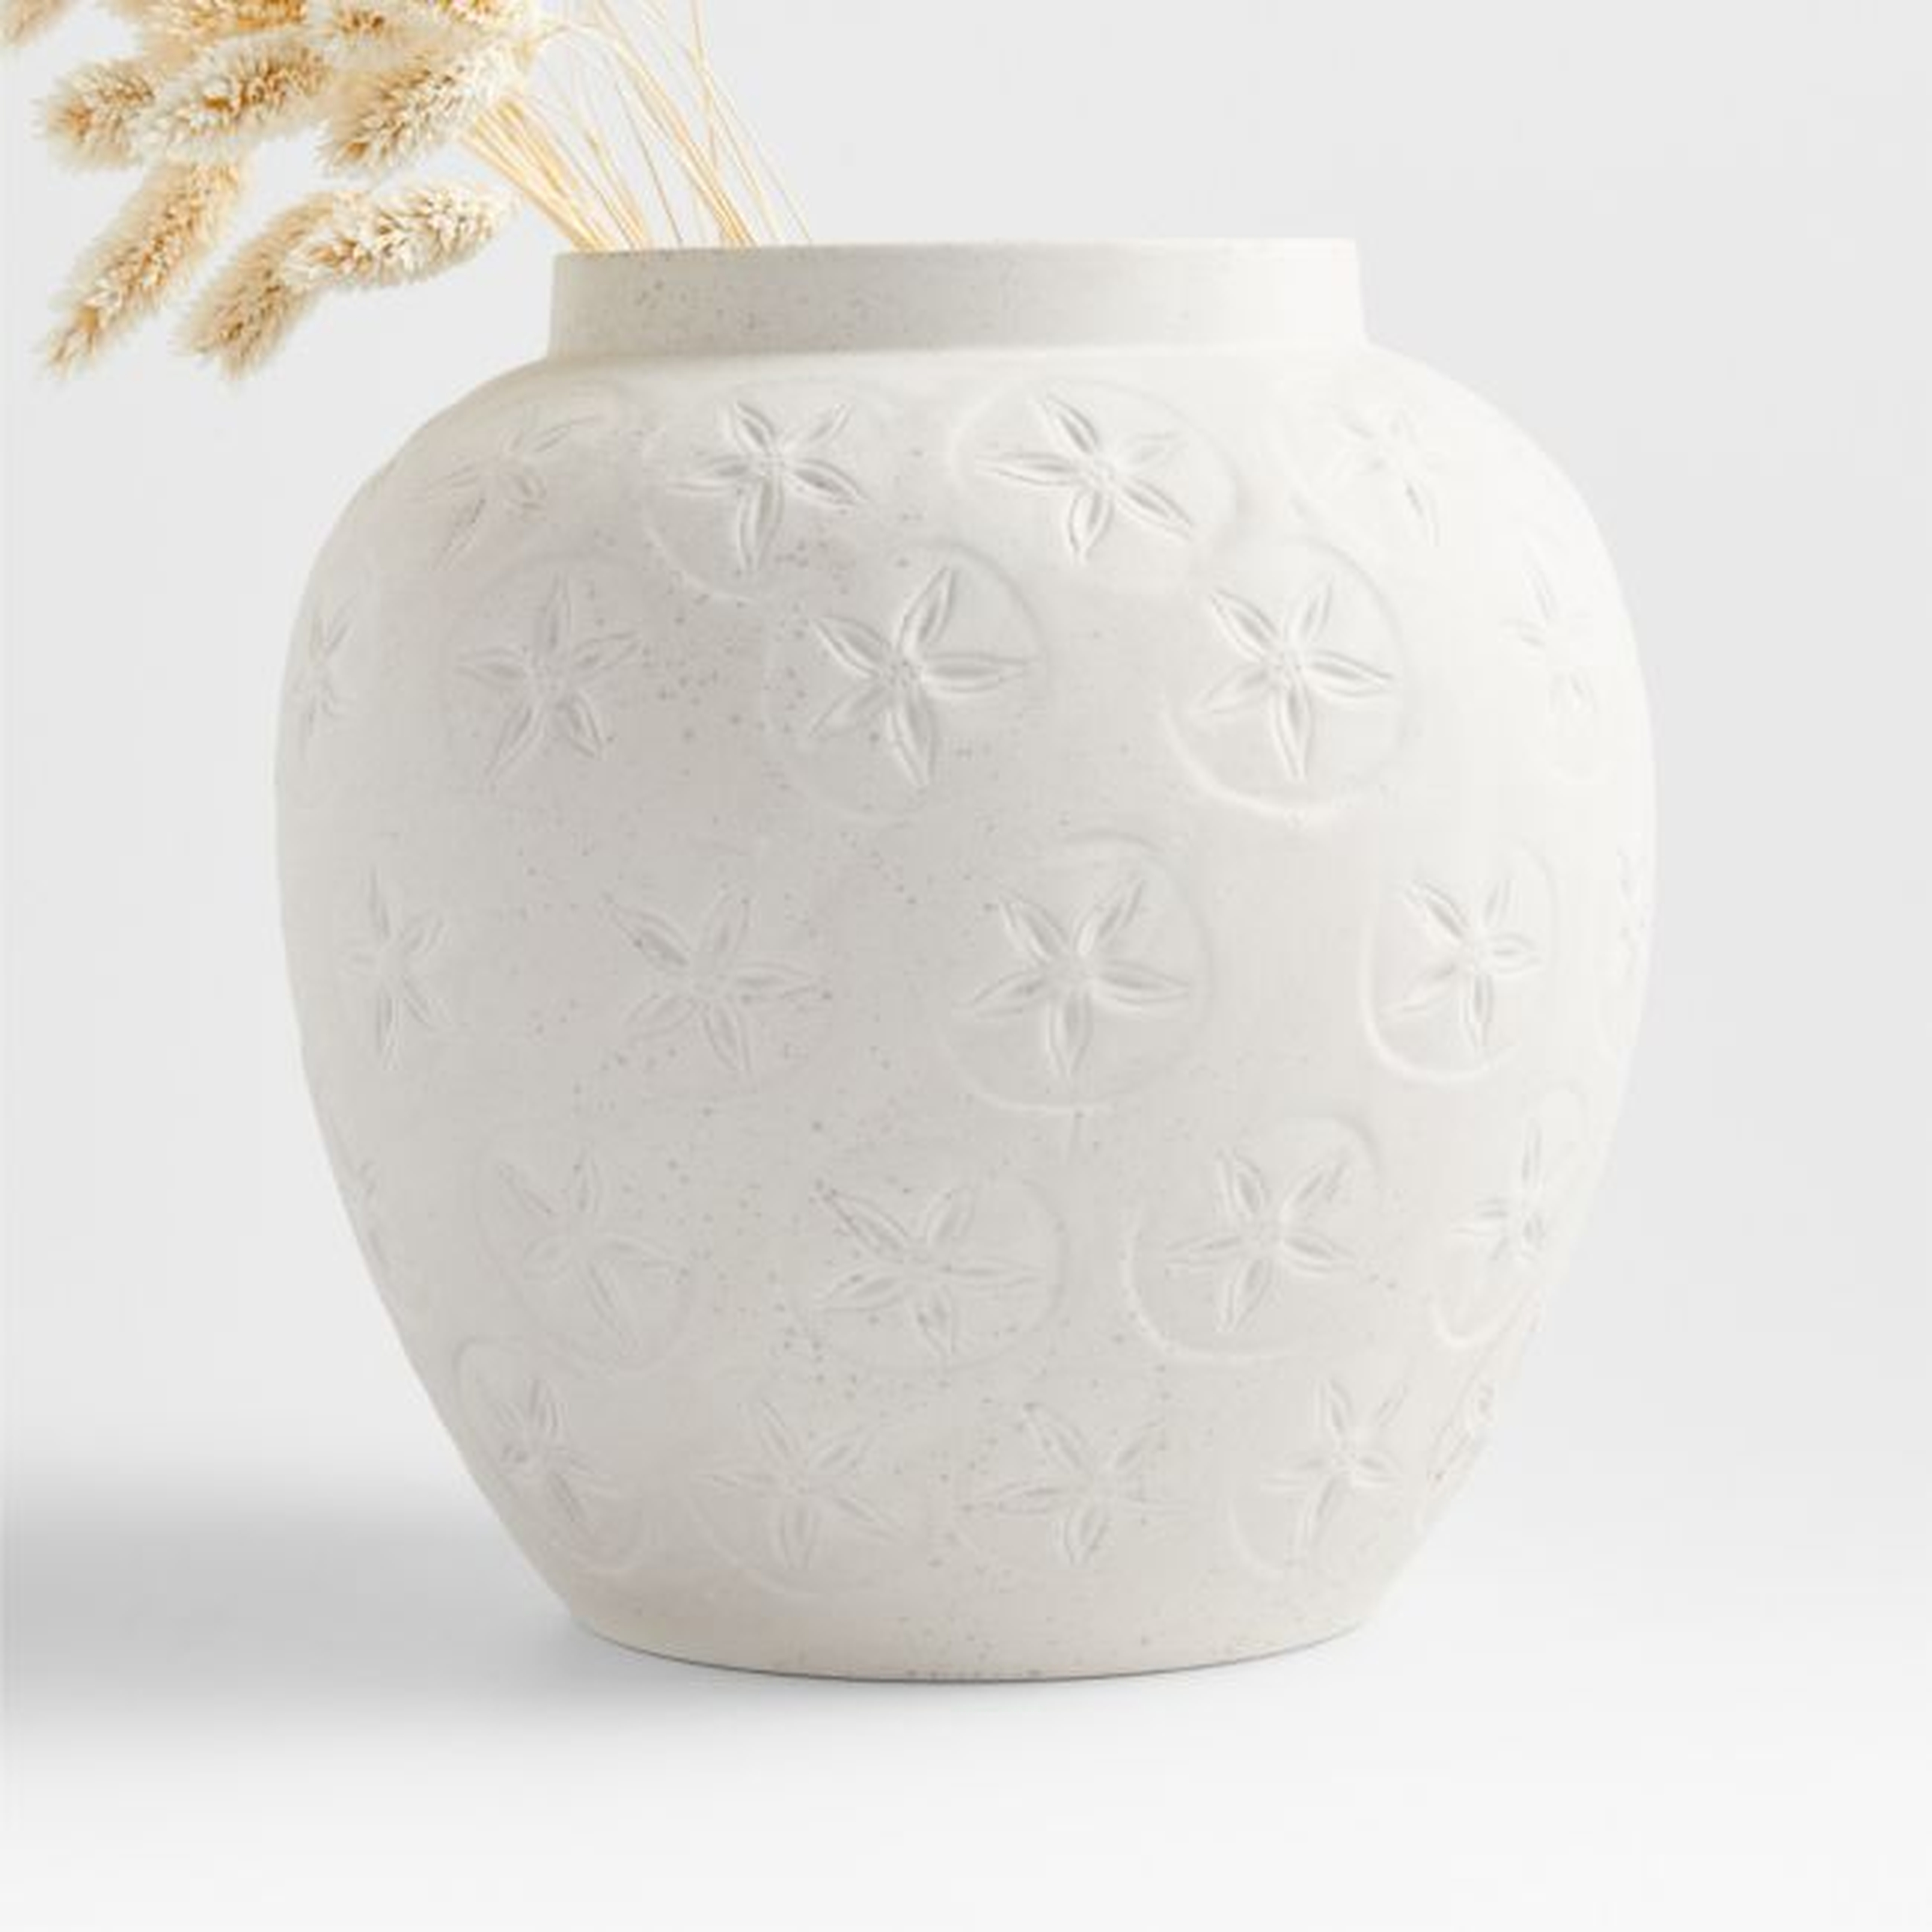 Coastal White Vase 9" - Crate and Barrel